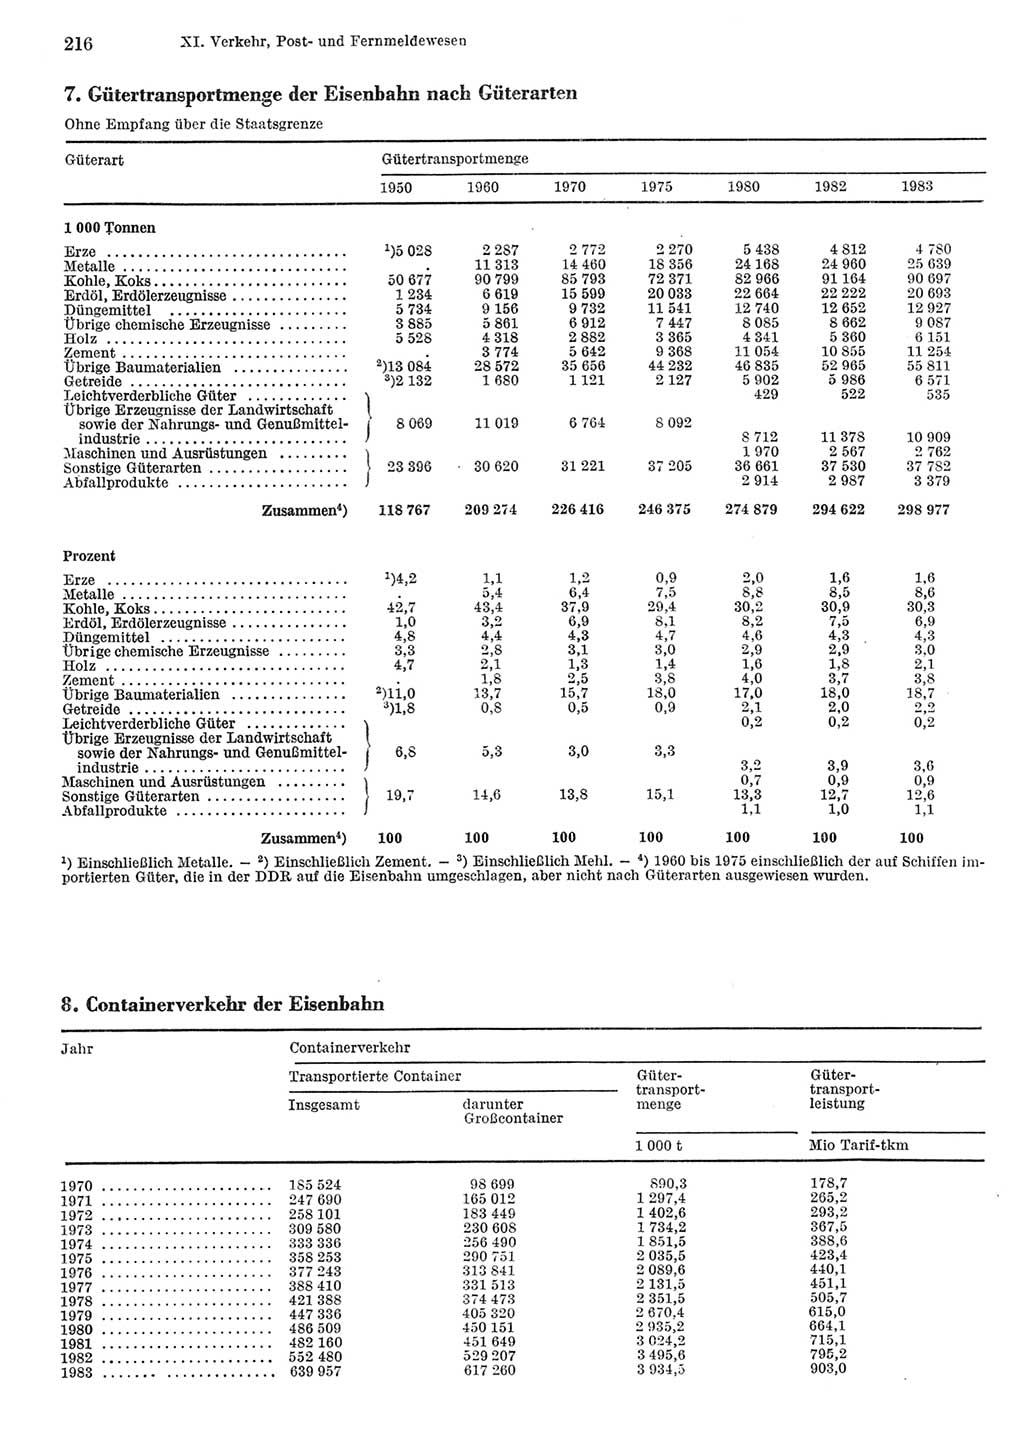 Statistisches Jahrbuch der Deutschen Demokratischen Republik (DDR) 1984, Seite 216 (Stat. Jb. DDR 1984, S. 216)